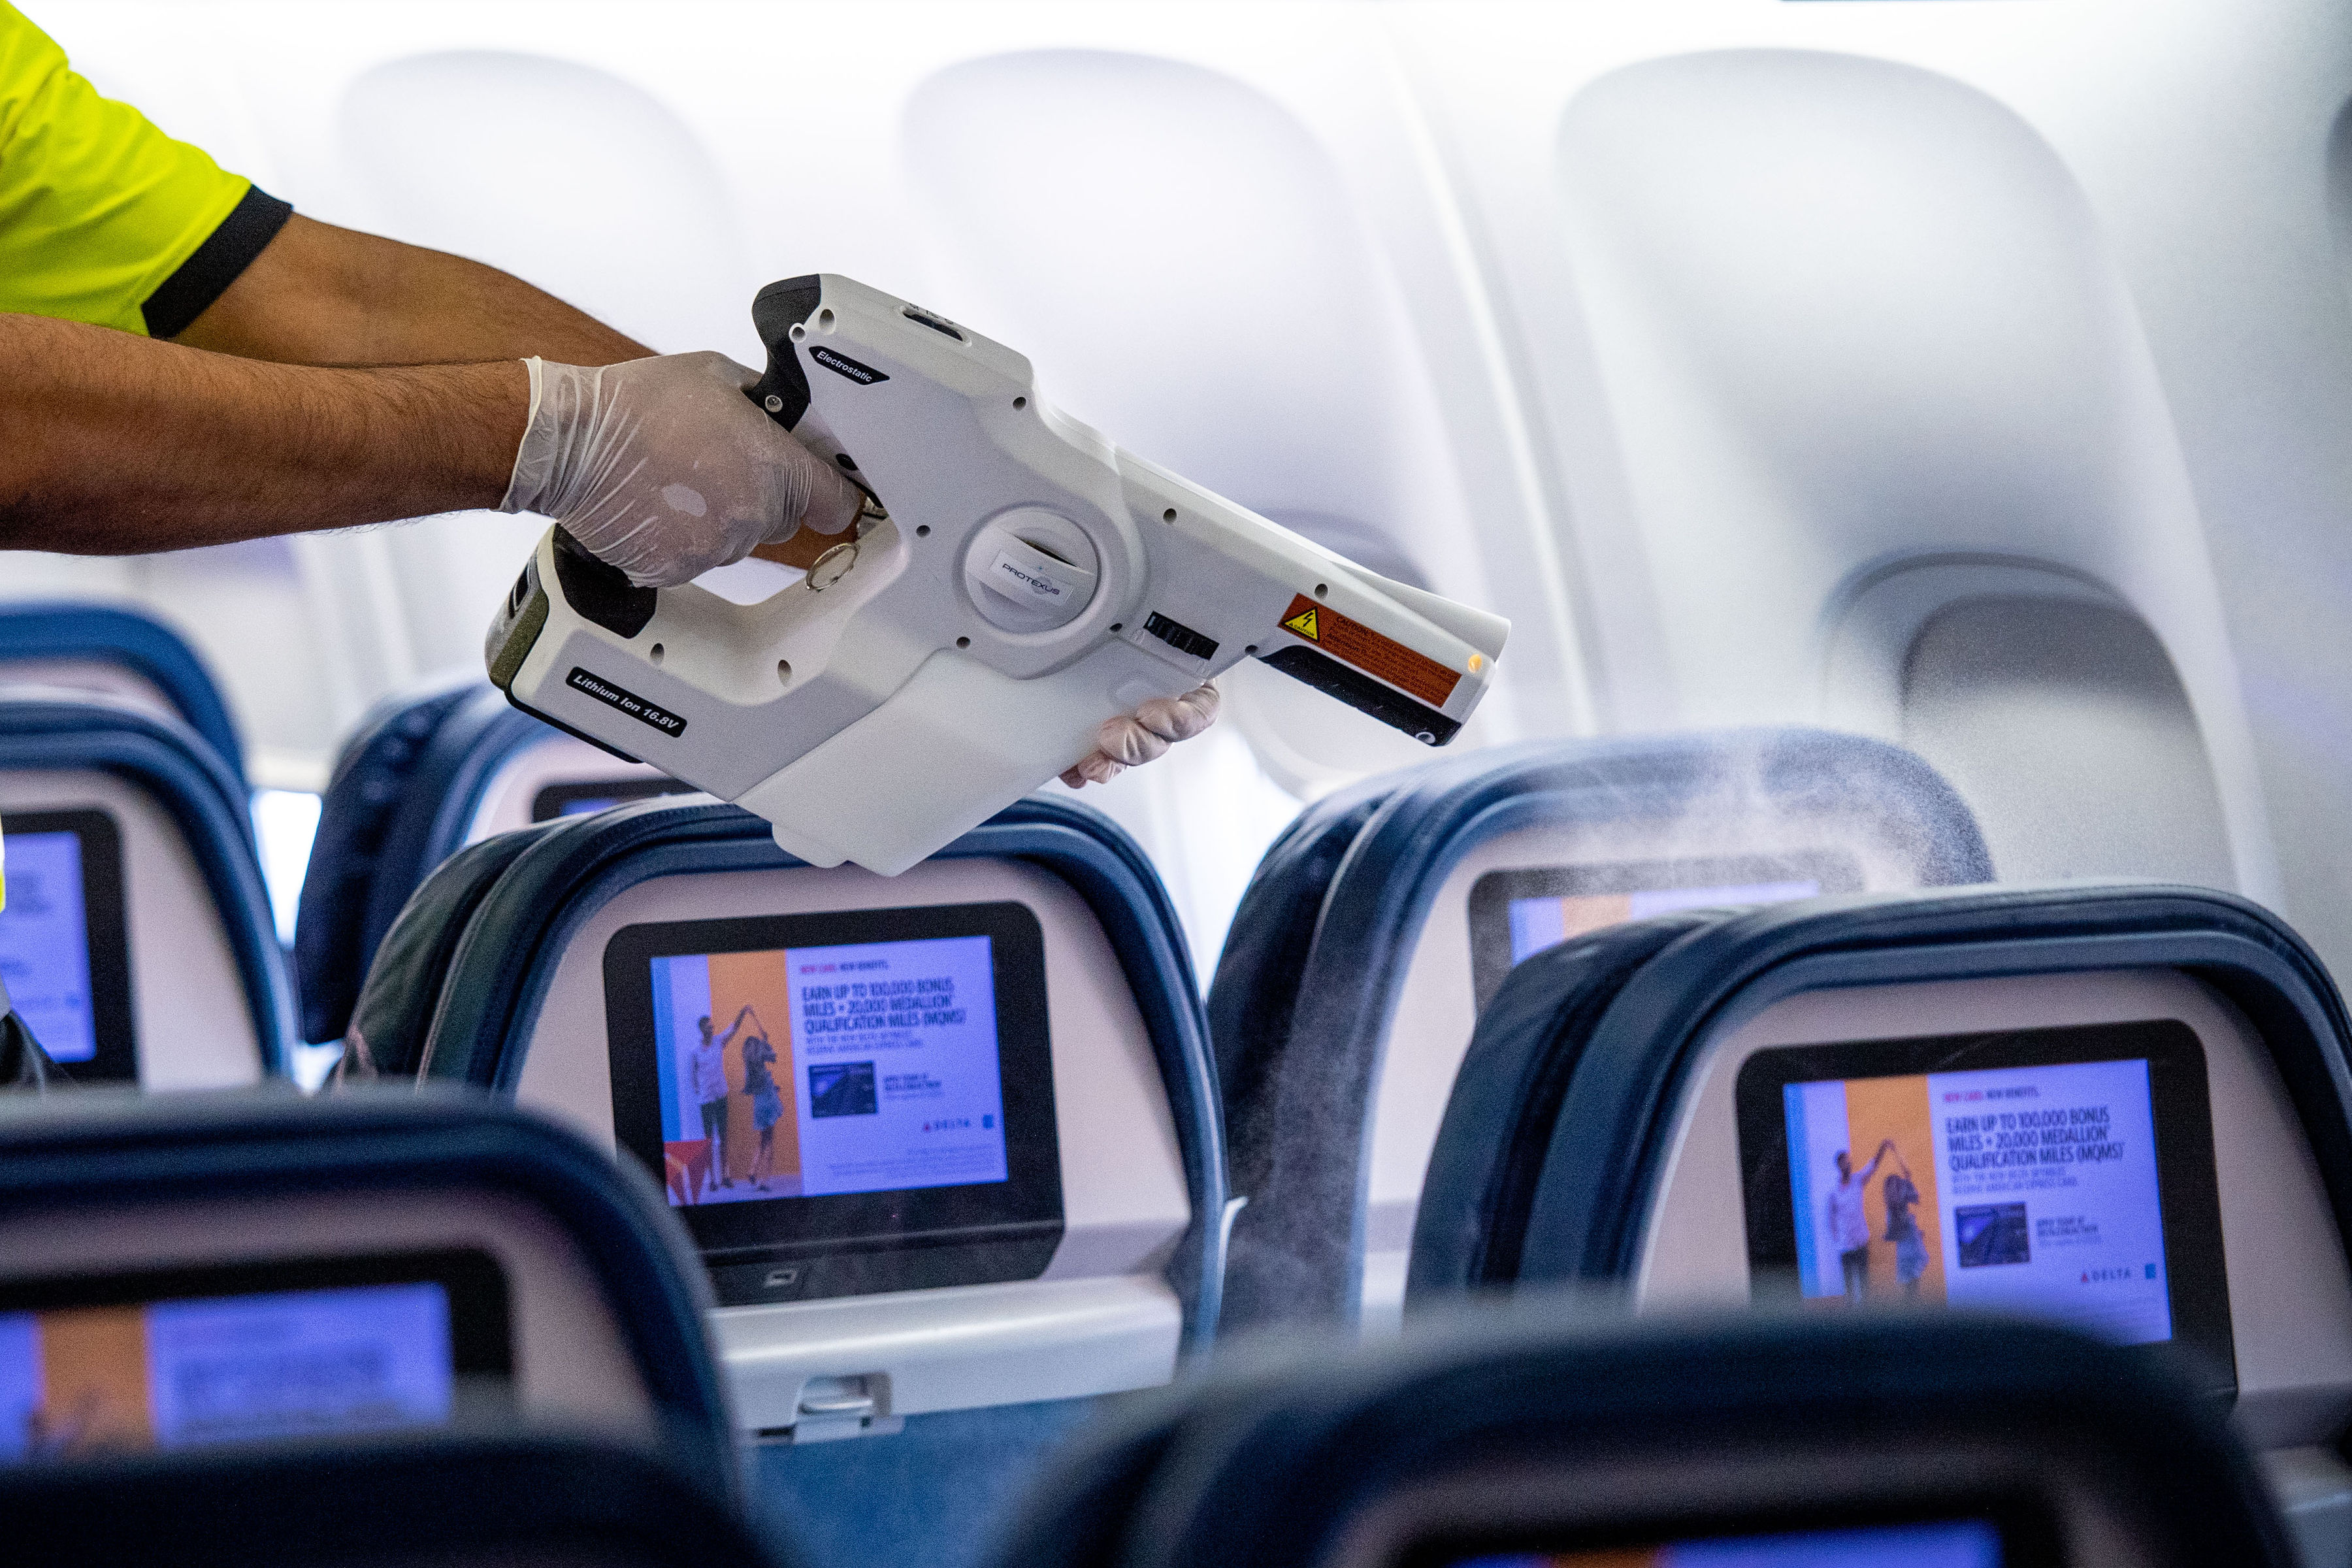 デルタ航空 新しい清潔さ基準 デルタ クリーン を導入 デルタ航空のプレスリリース